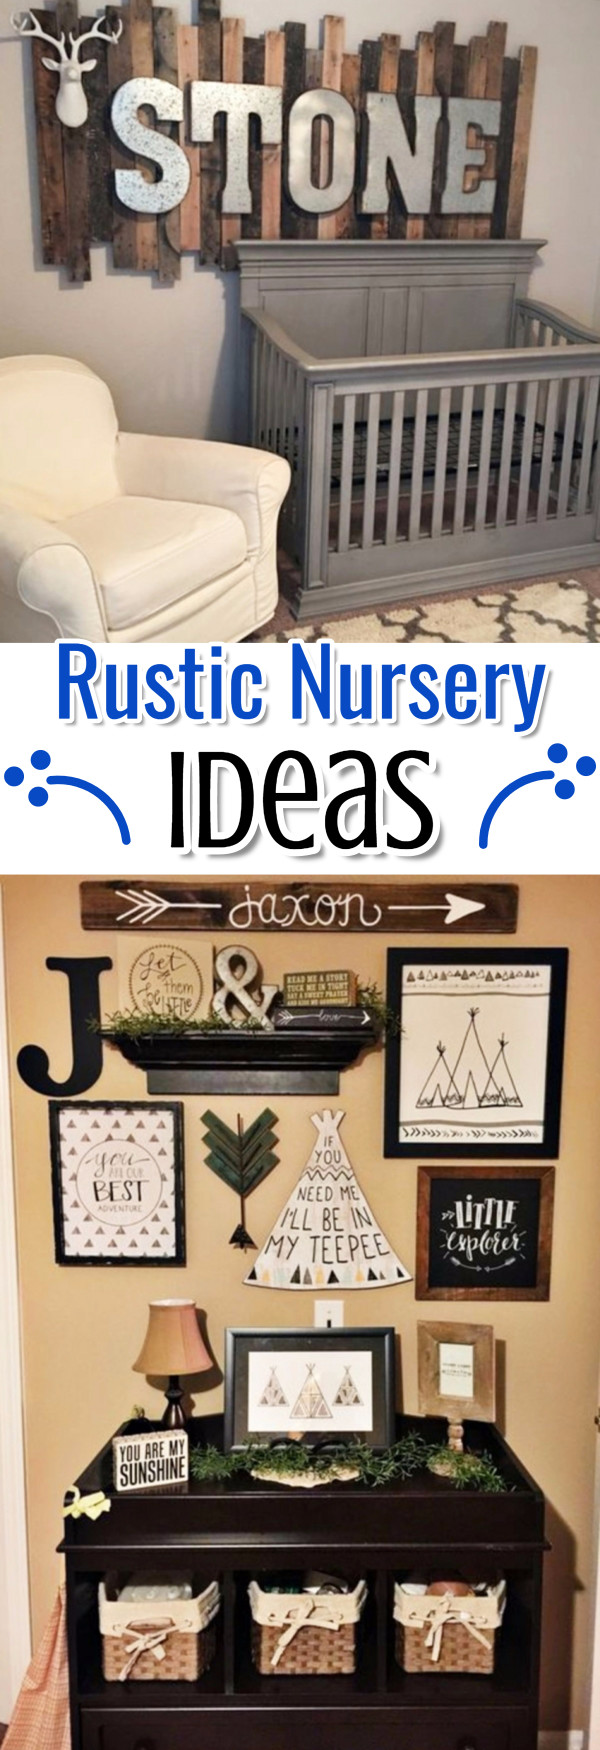 Rustic Baby Nursery Ideas - Unique Baby Boy Nursery Themes